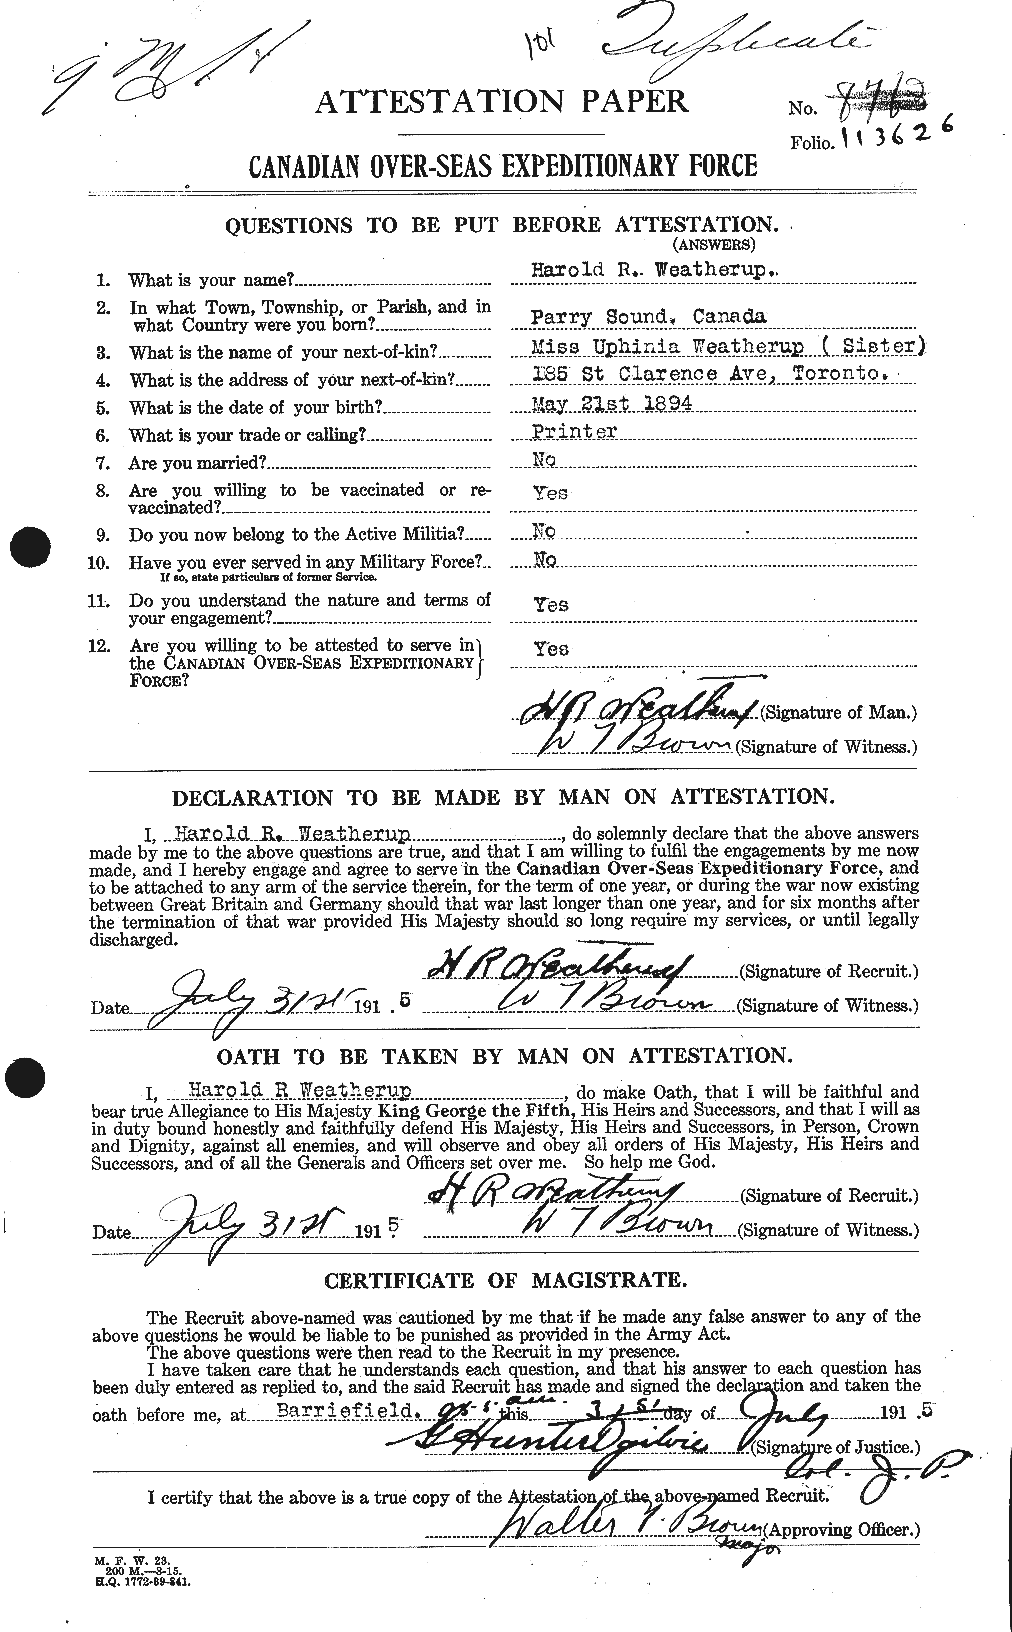 Dossiers du Personnel de la Première Guerre mondiale - CEC 664287a